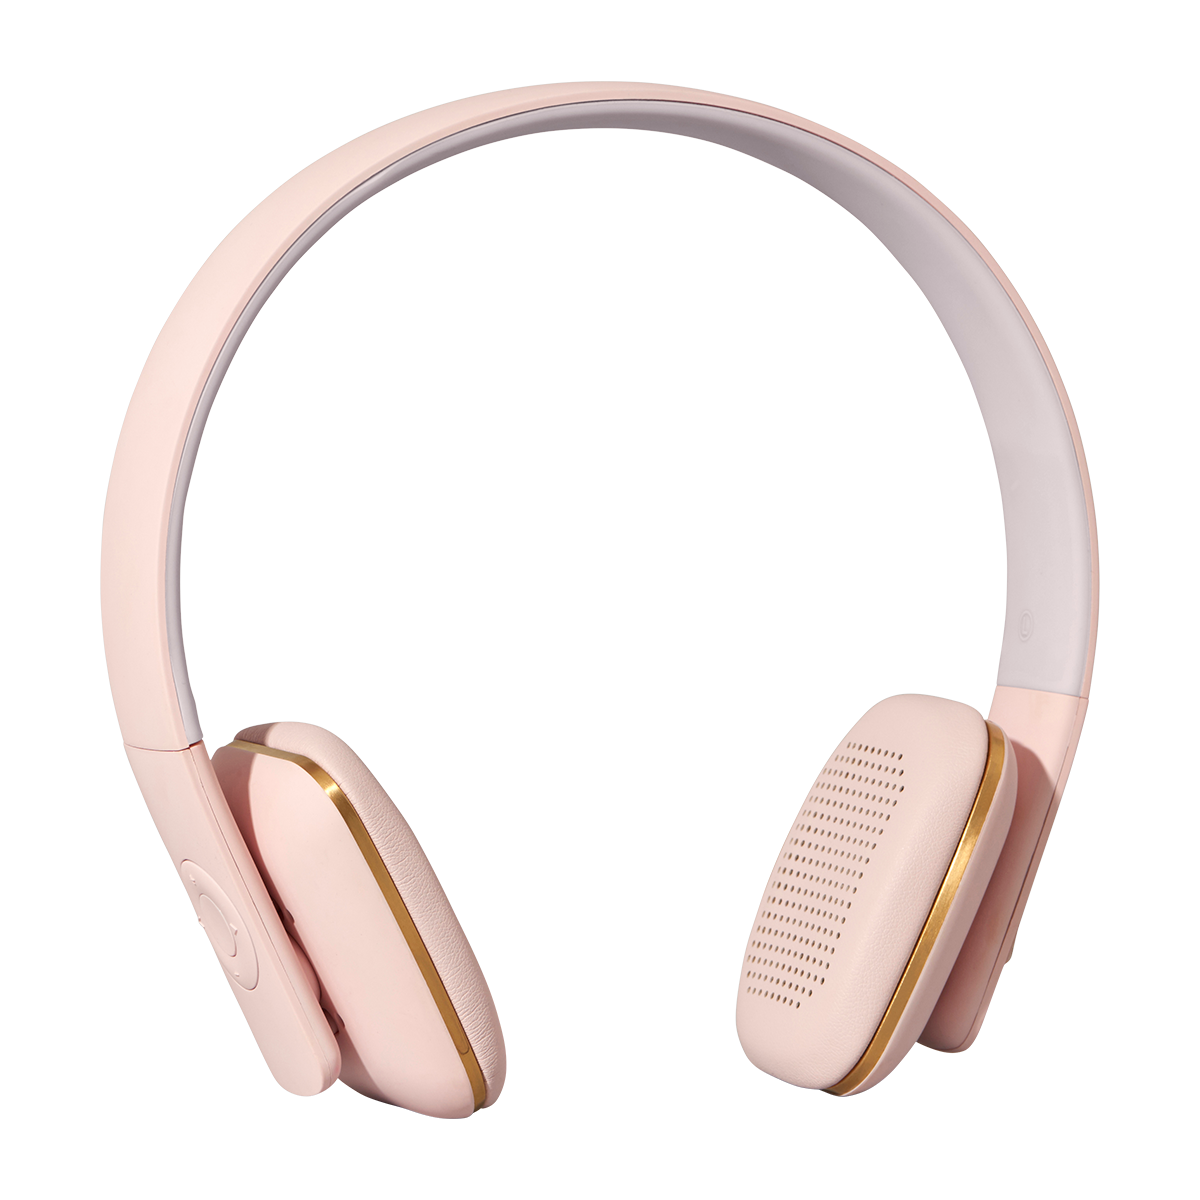 KreaFunk - aHead Headset - Dusty Pink (Kfss06)